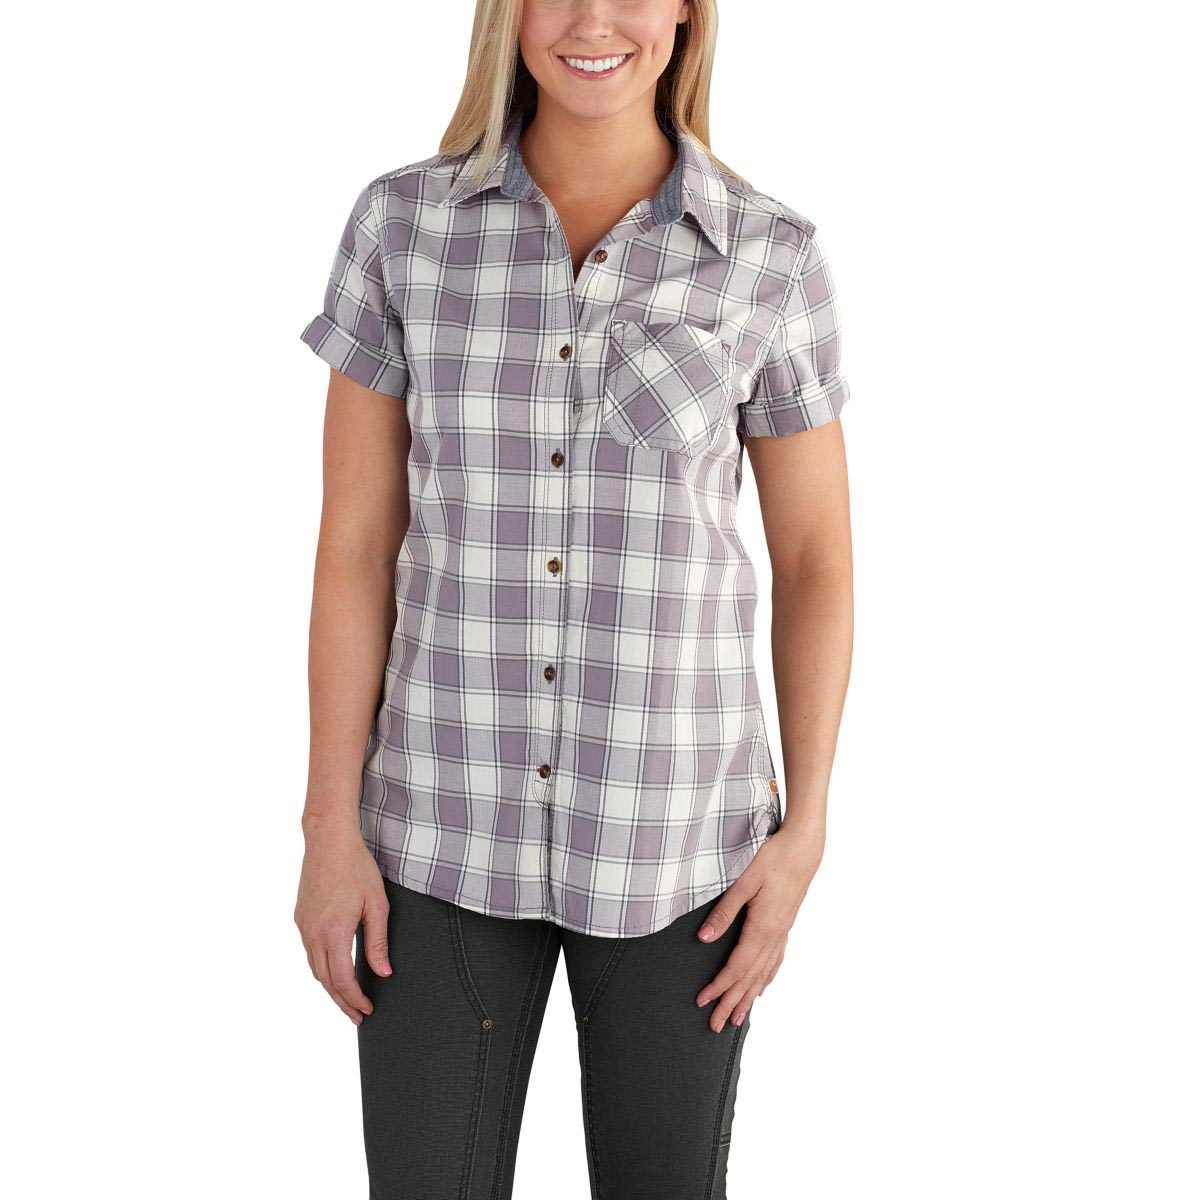 Carhartt Women's Dodson Short Sleeve Shirt